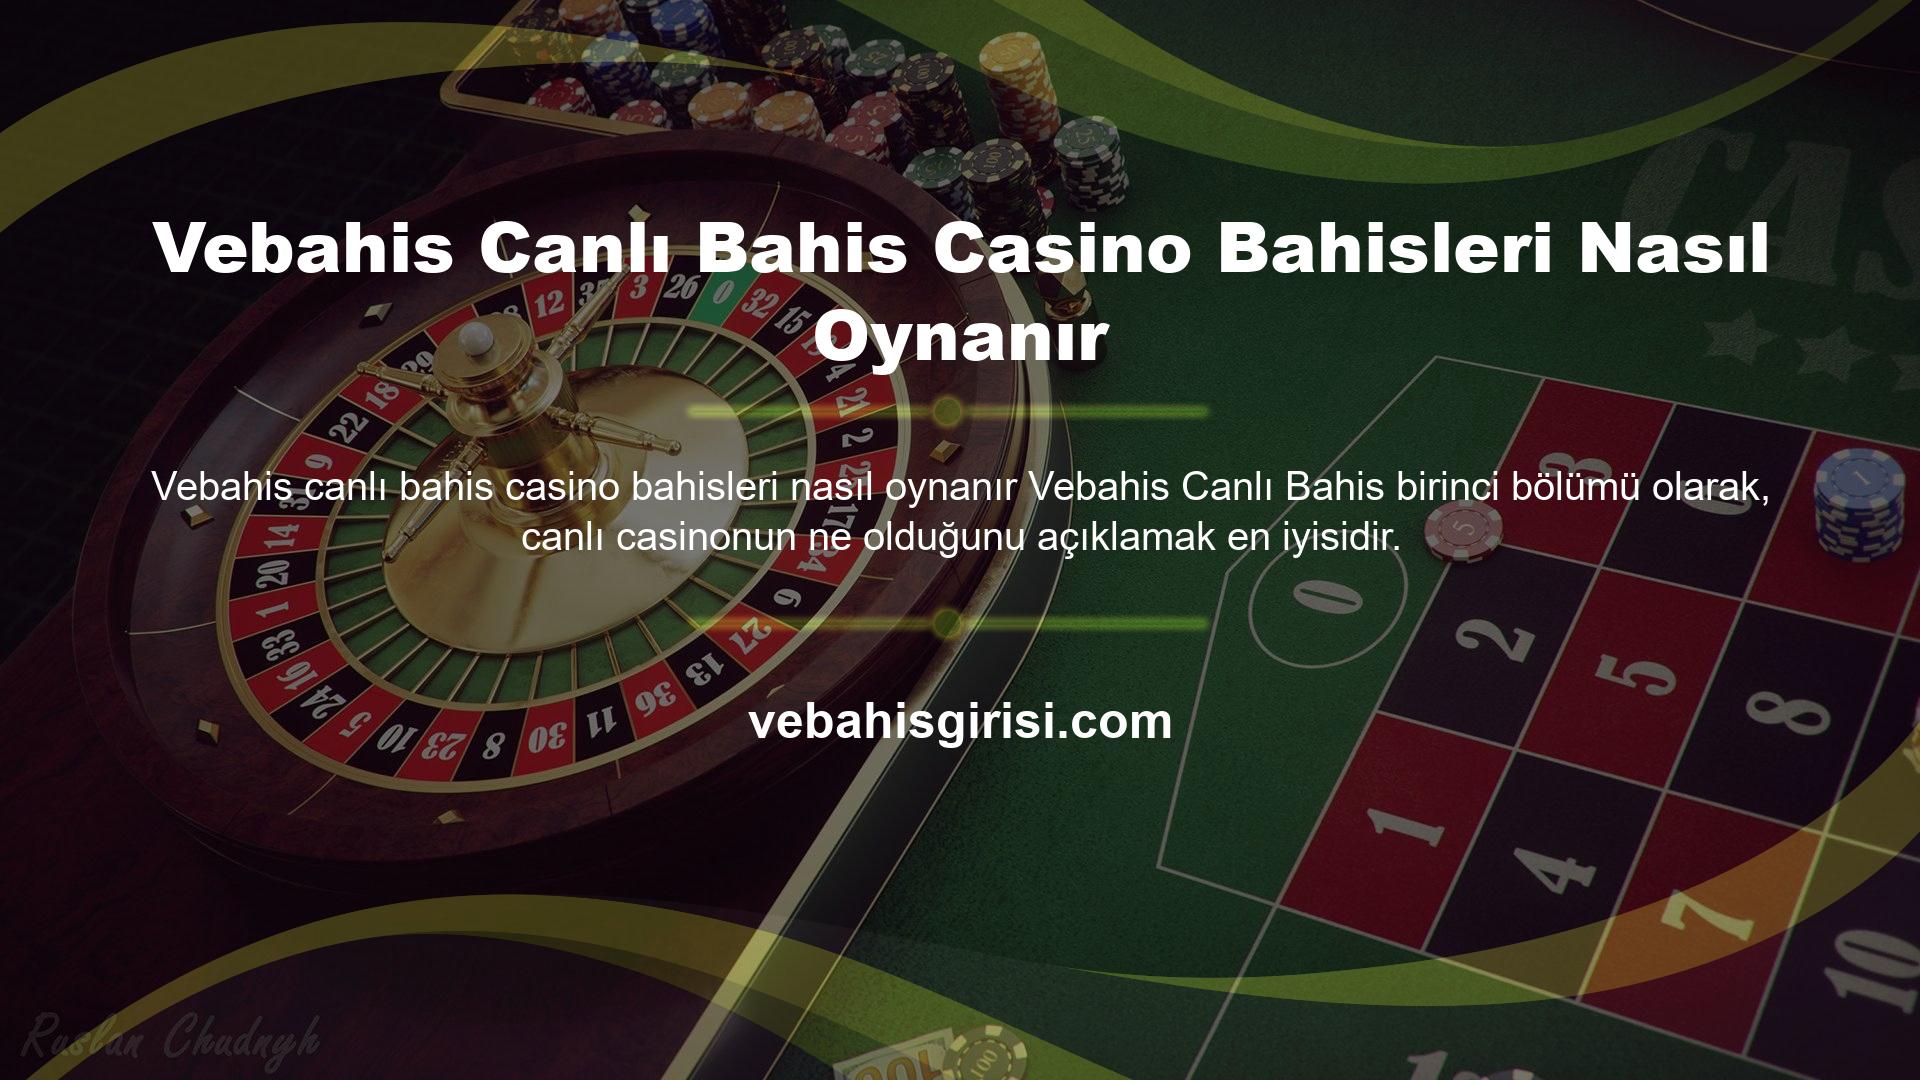 Vebahis Canlı Bahis Casino Bahisleri Nasıl Oynanır